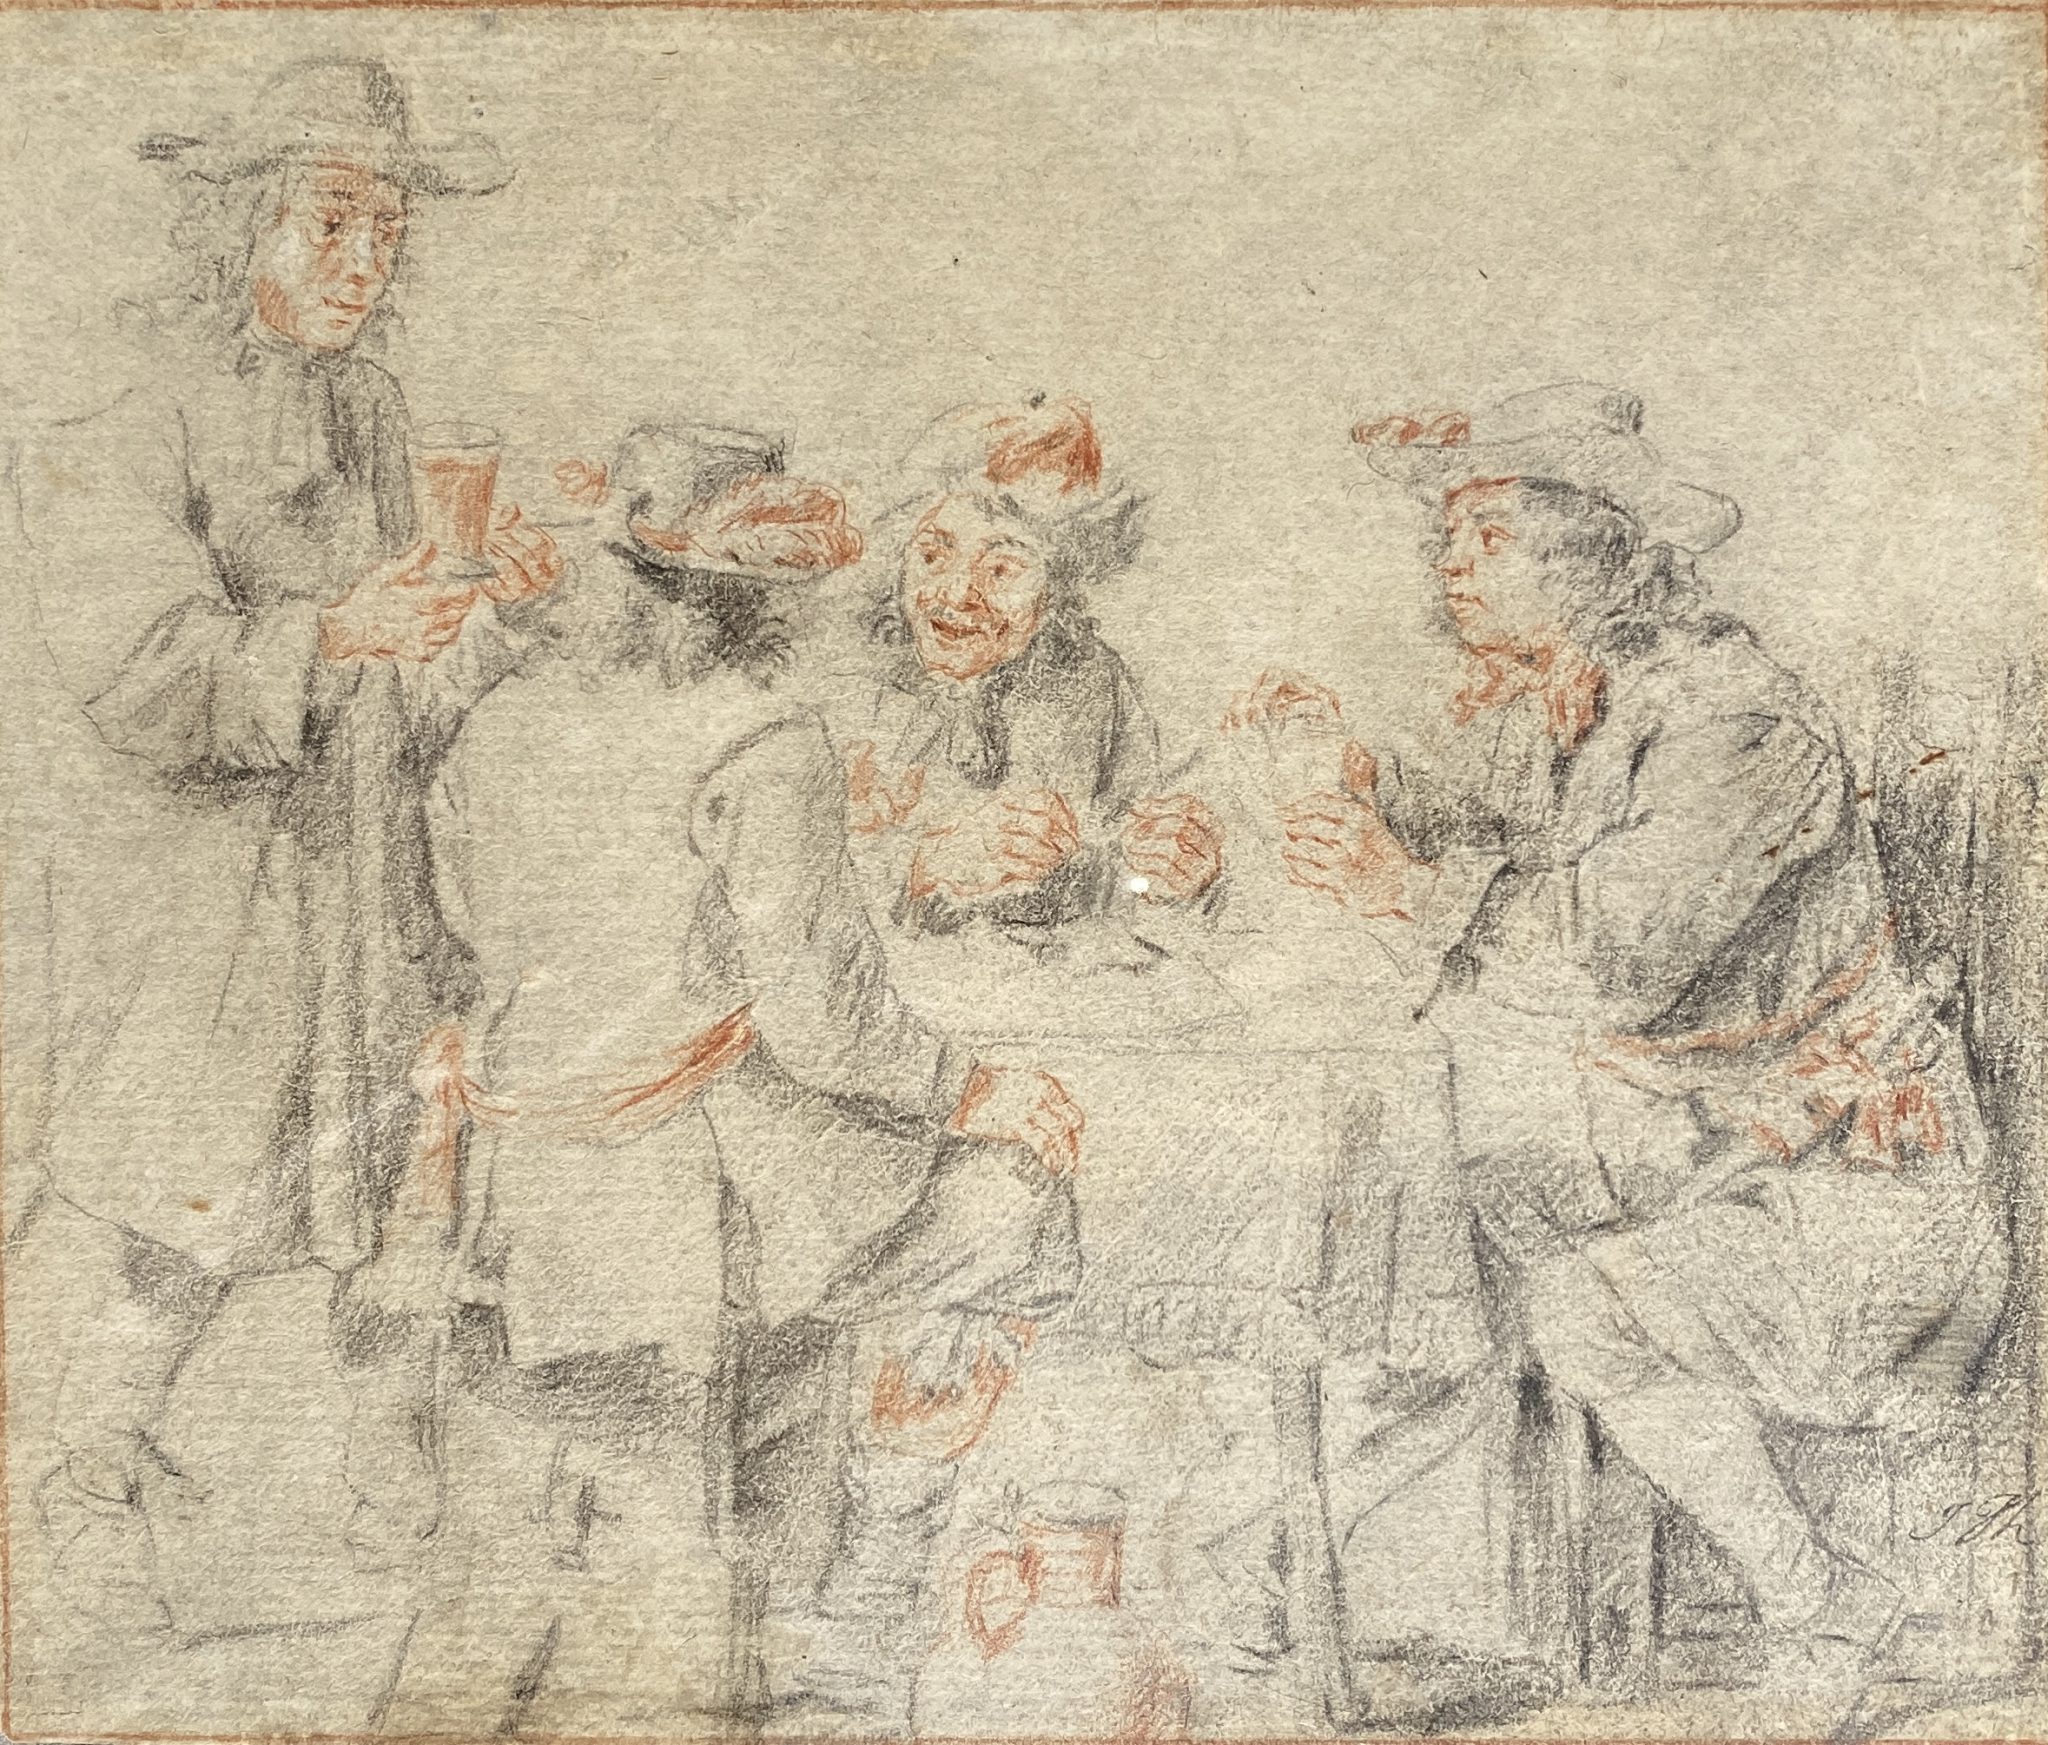 4 Men playing Cards